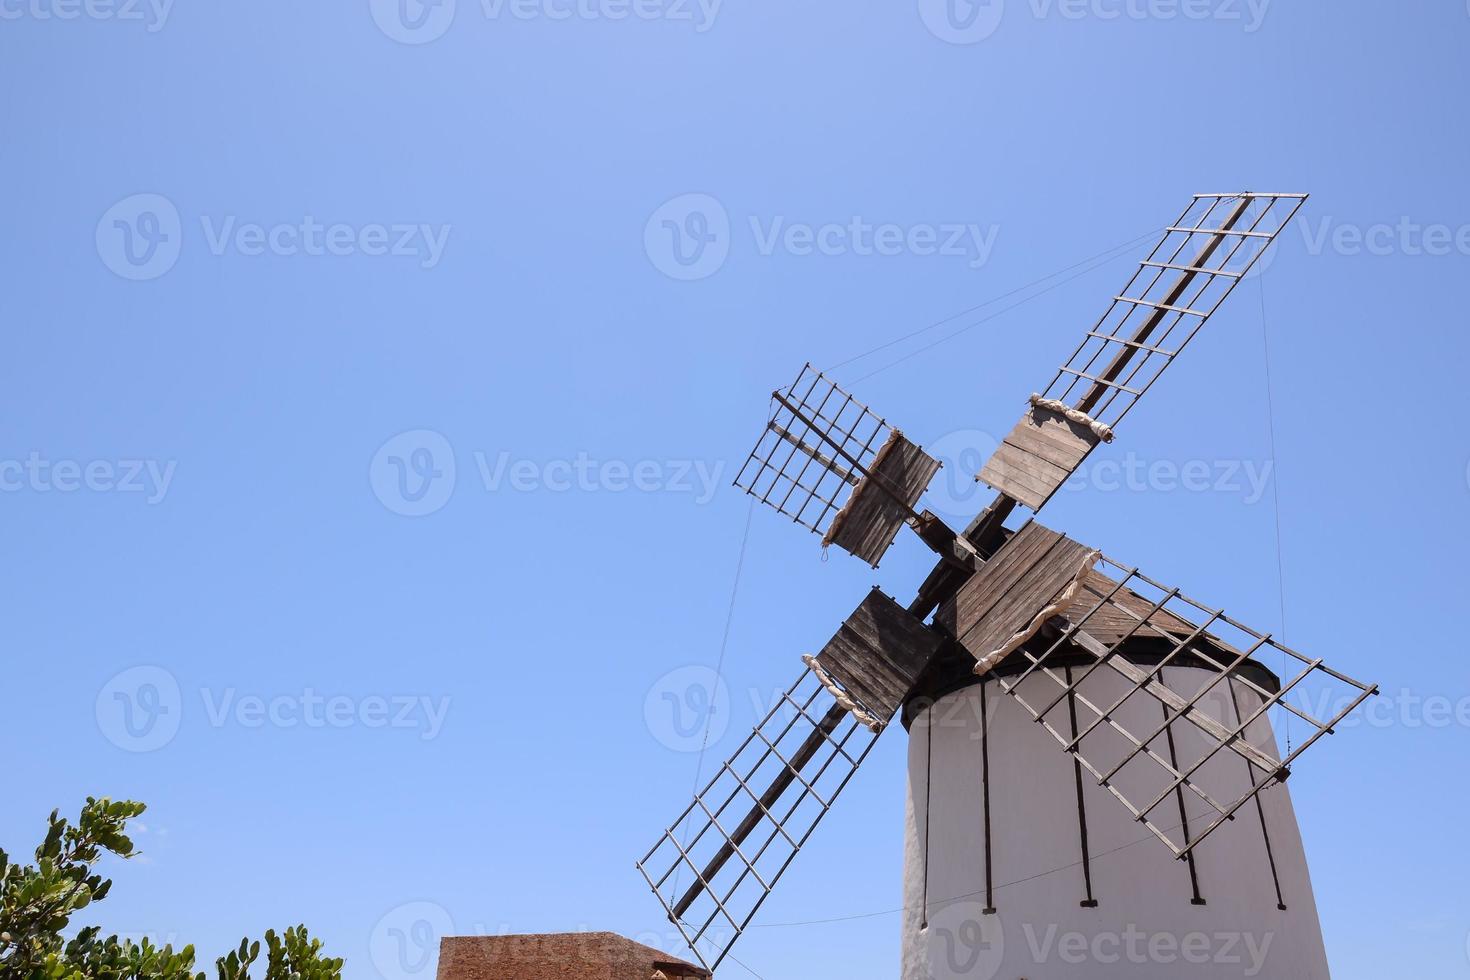 traditionell väderkvarn under klar blå himmel foto